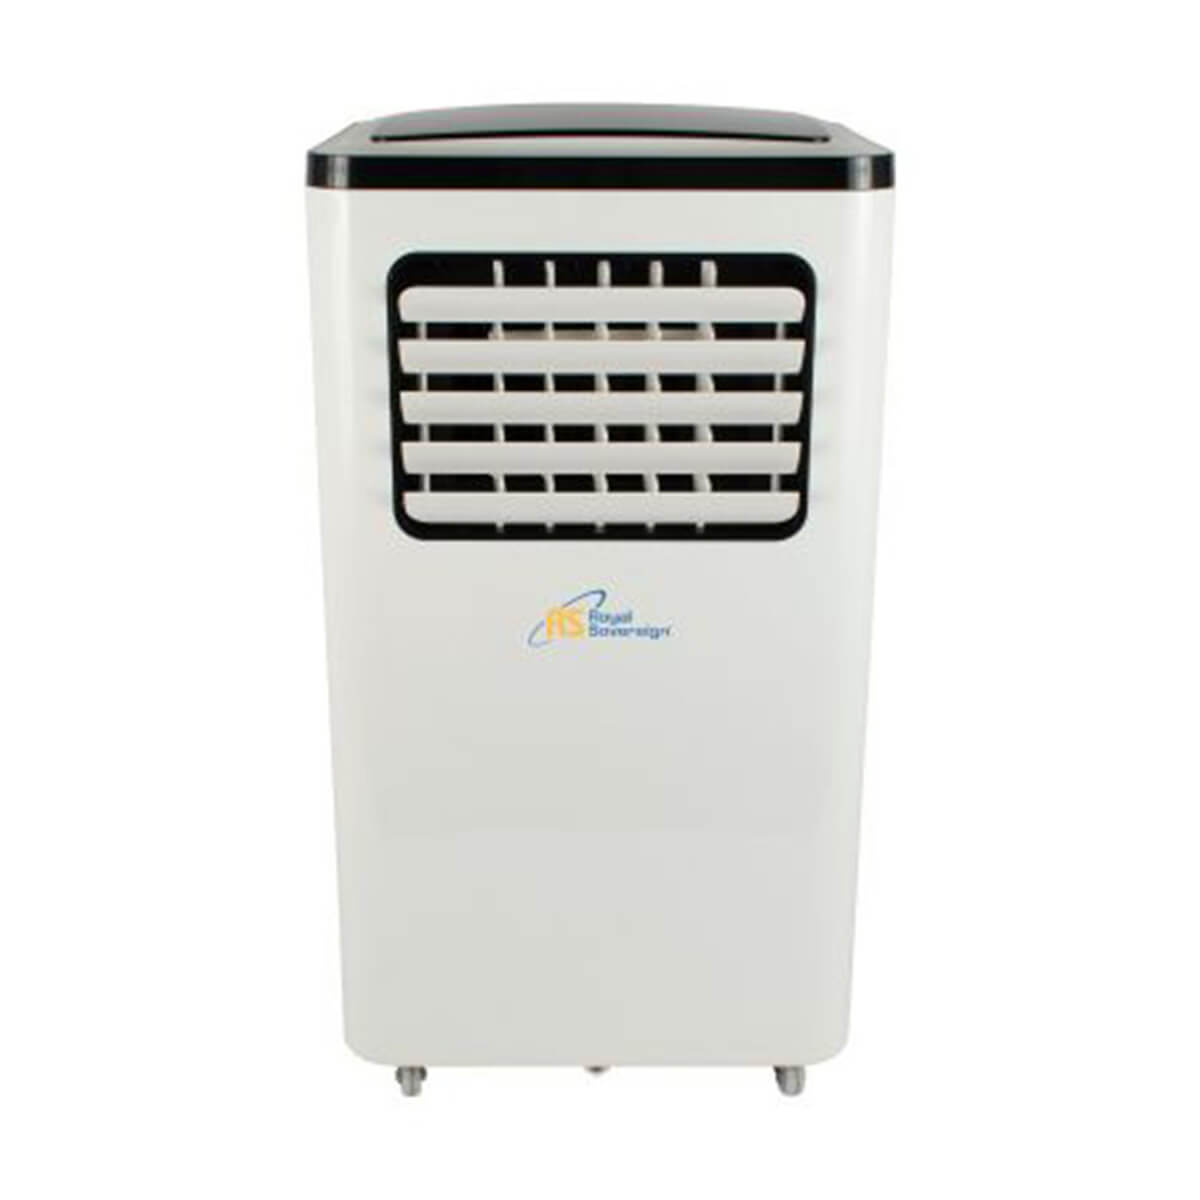 10,000 BTU 3-in-1 Portable Air Conditioner - ARP-910